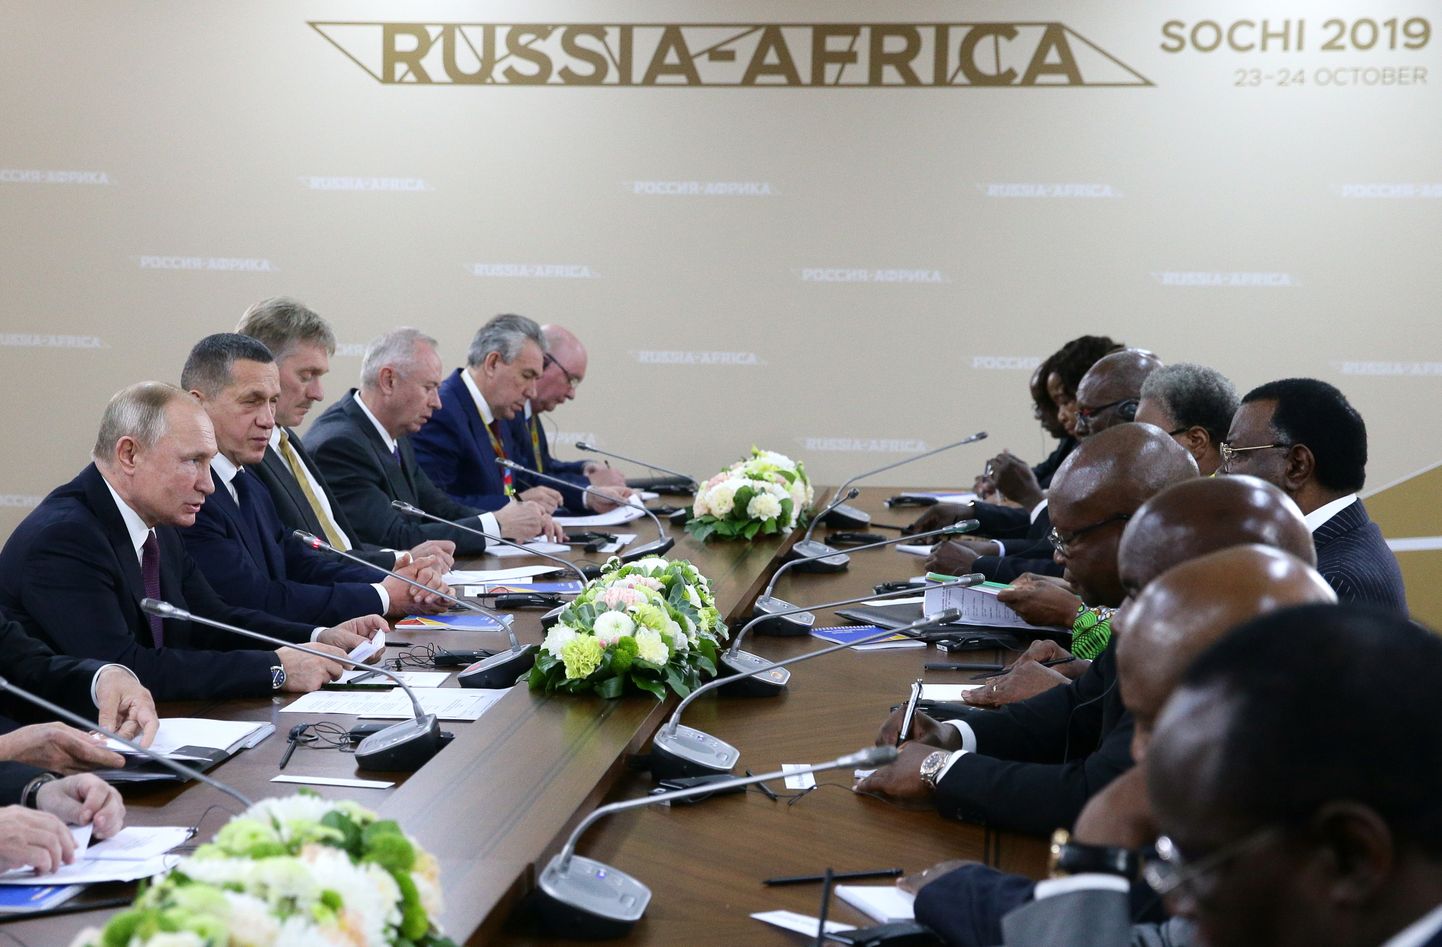 Сочи, Россия, саммит "Россия - Африка".